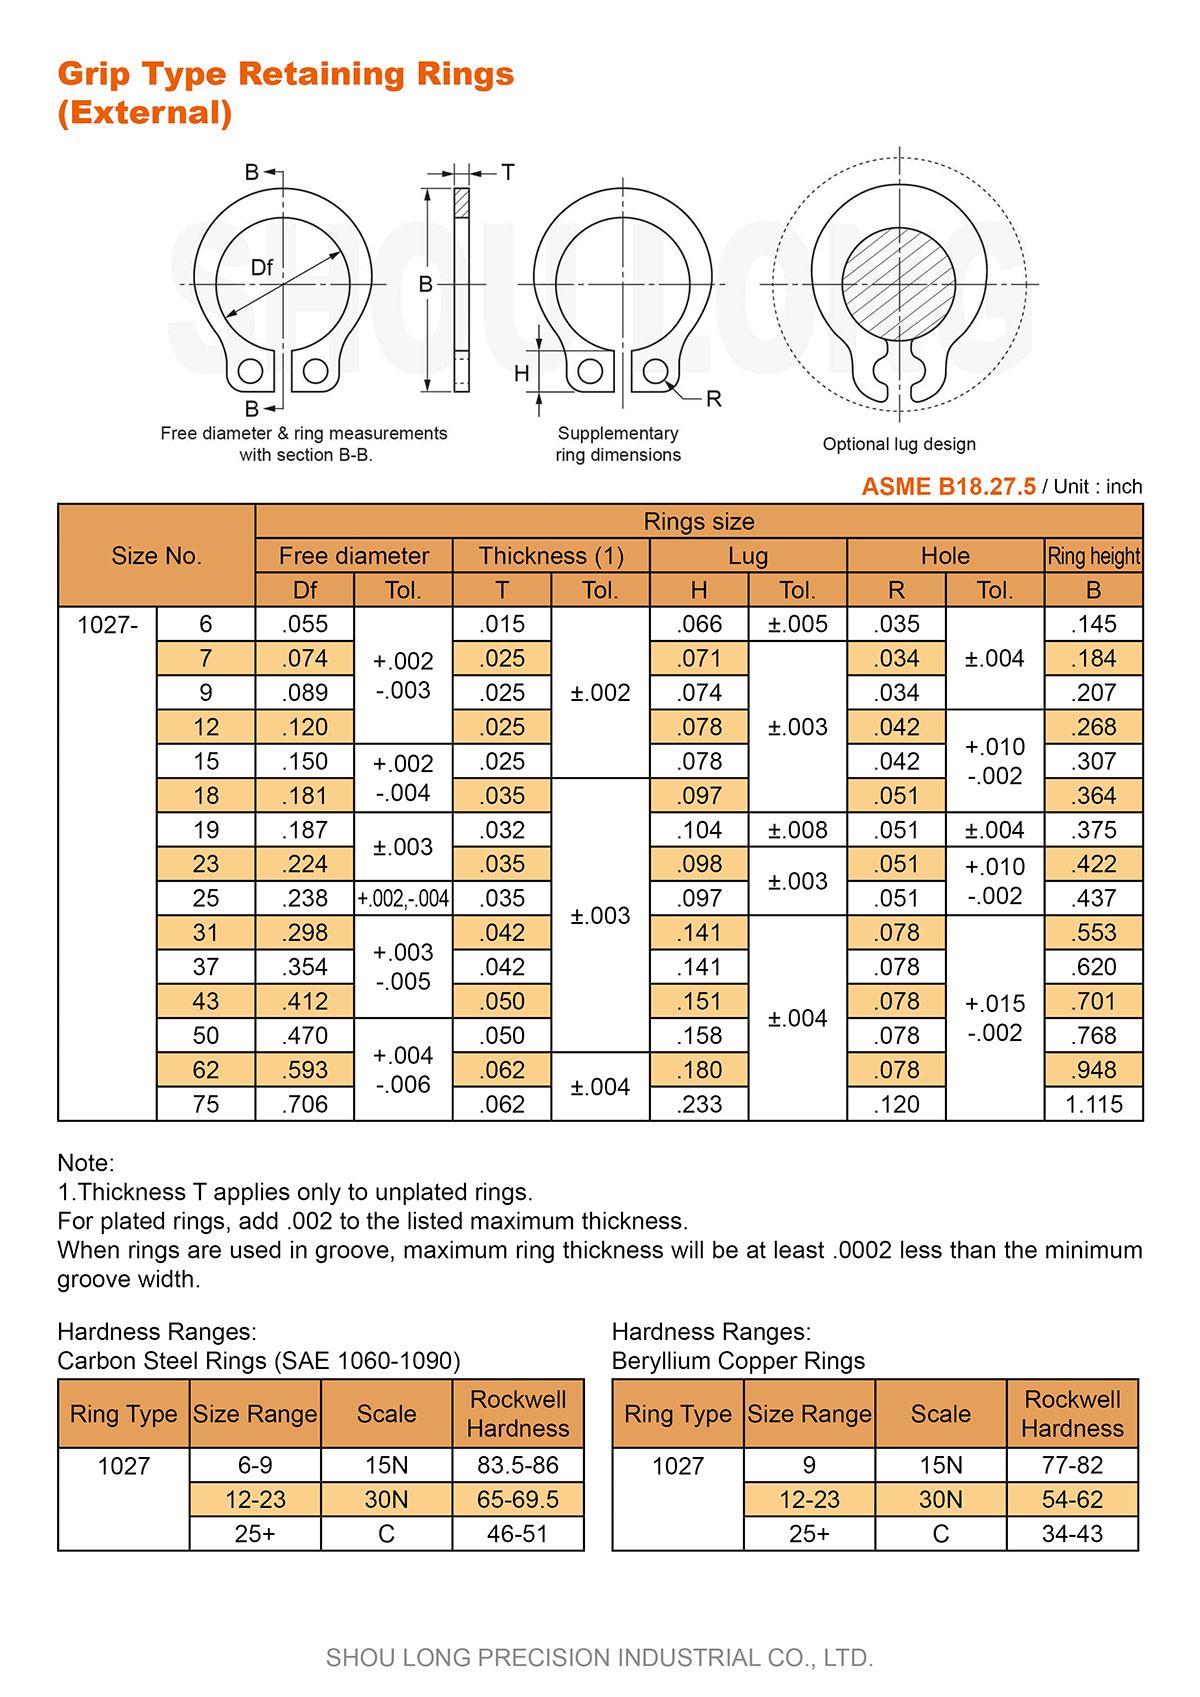 Spesifikasi Cincin Penahan Jenis Grip Inci untuk Poros ASME/ANSI B18.27.5